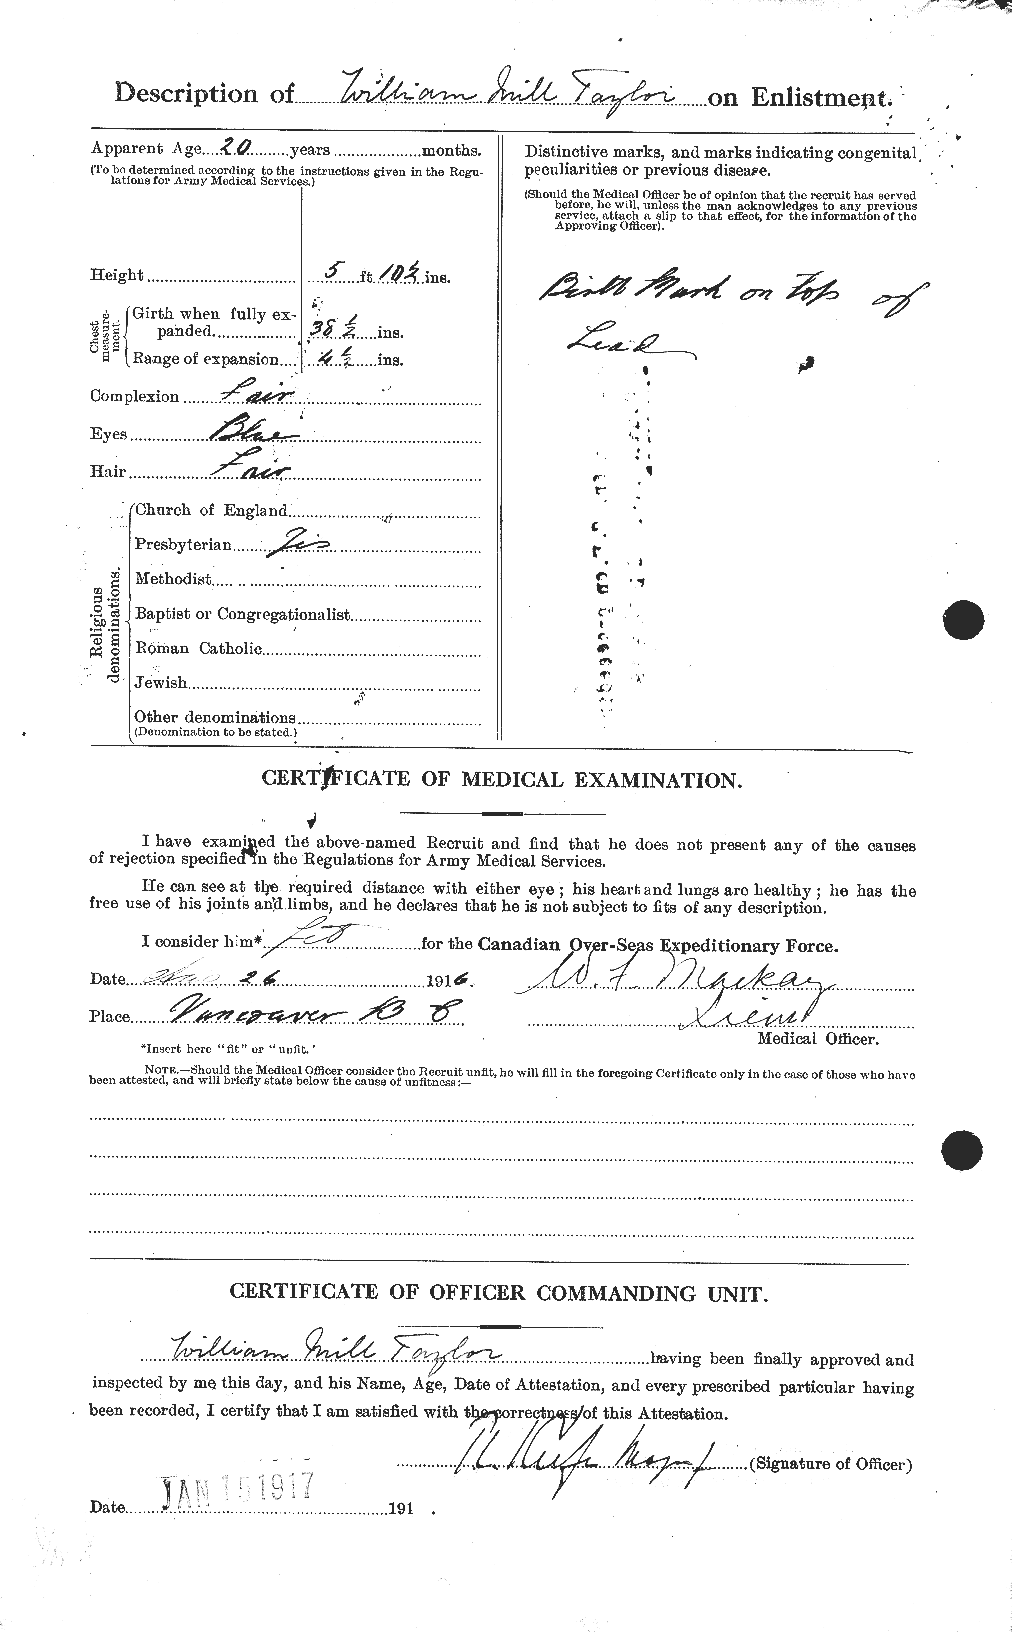 Dossiers du Personnel de la Première Guerre mondiale - CEC 628329b